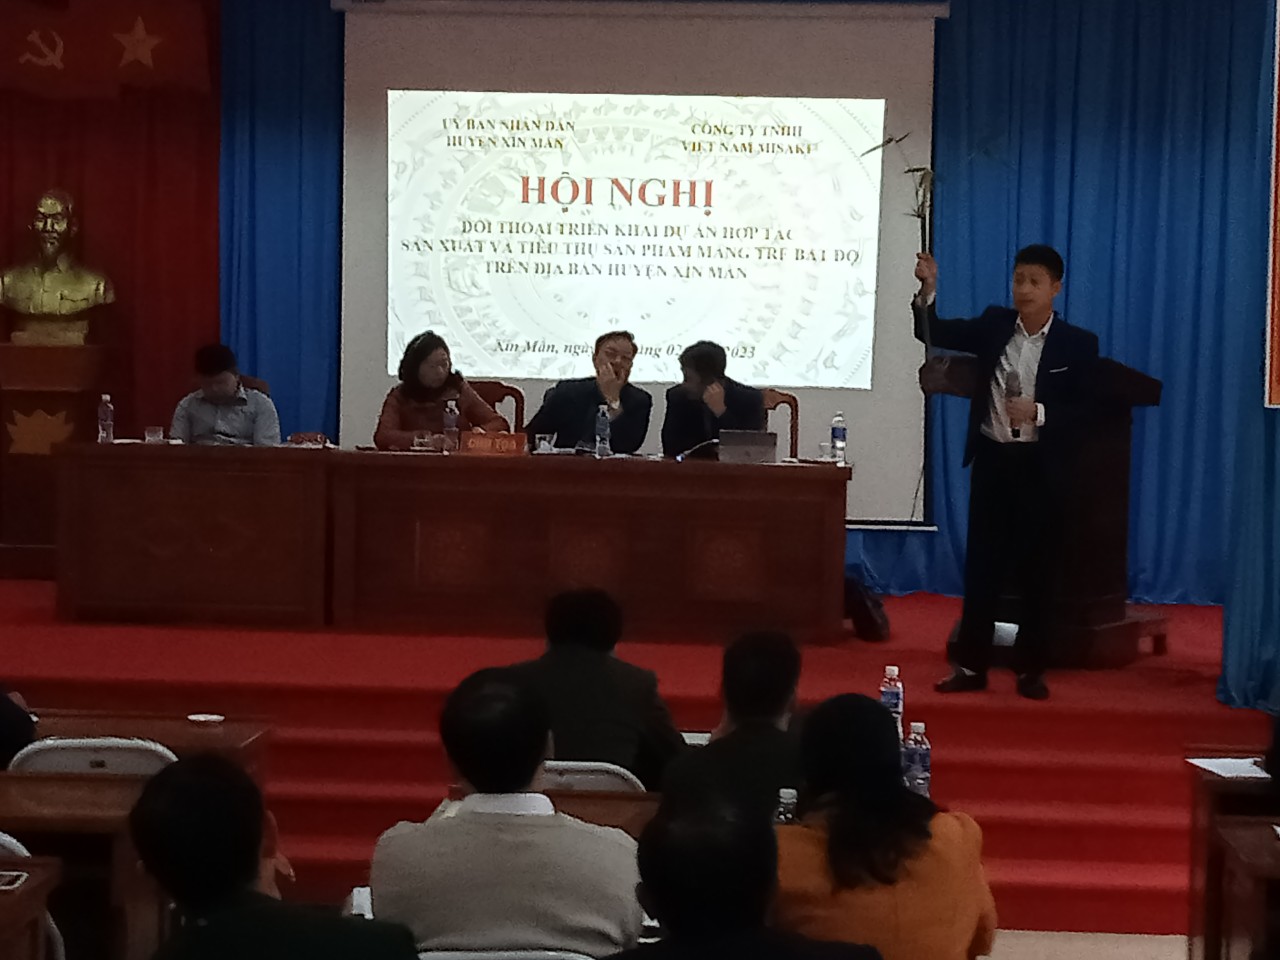 Hội nghị đối thoại hợp tác sản xuất và tiêu thụ sản phẩm mâng tre Bát độ trên địa bàn huyện Xín Mần tại xã Nà Chì